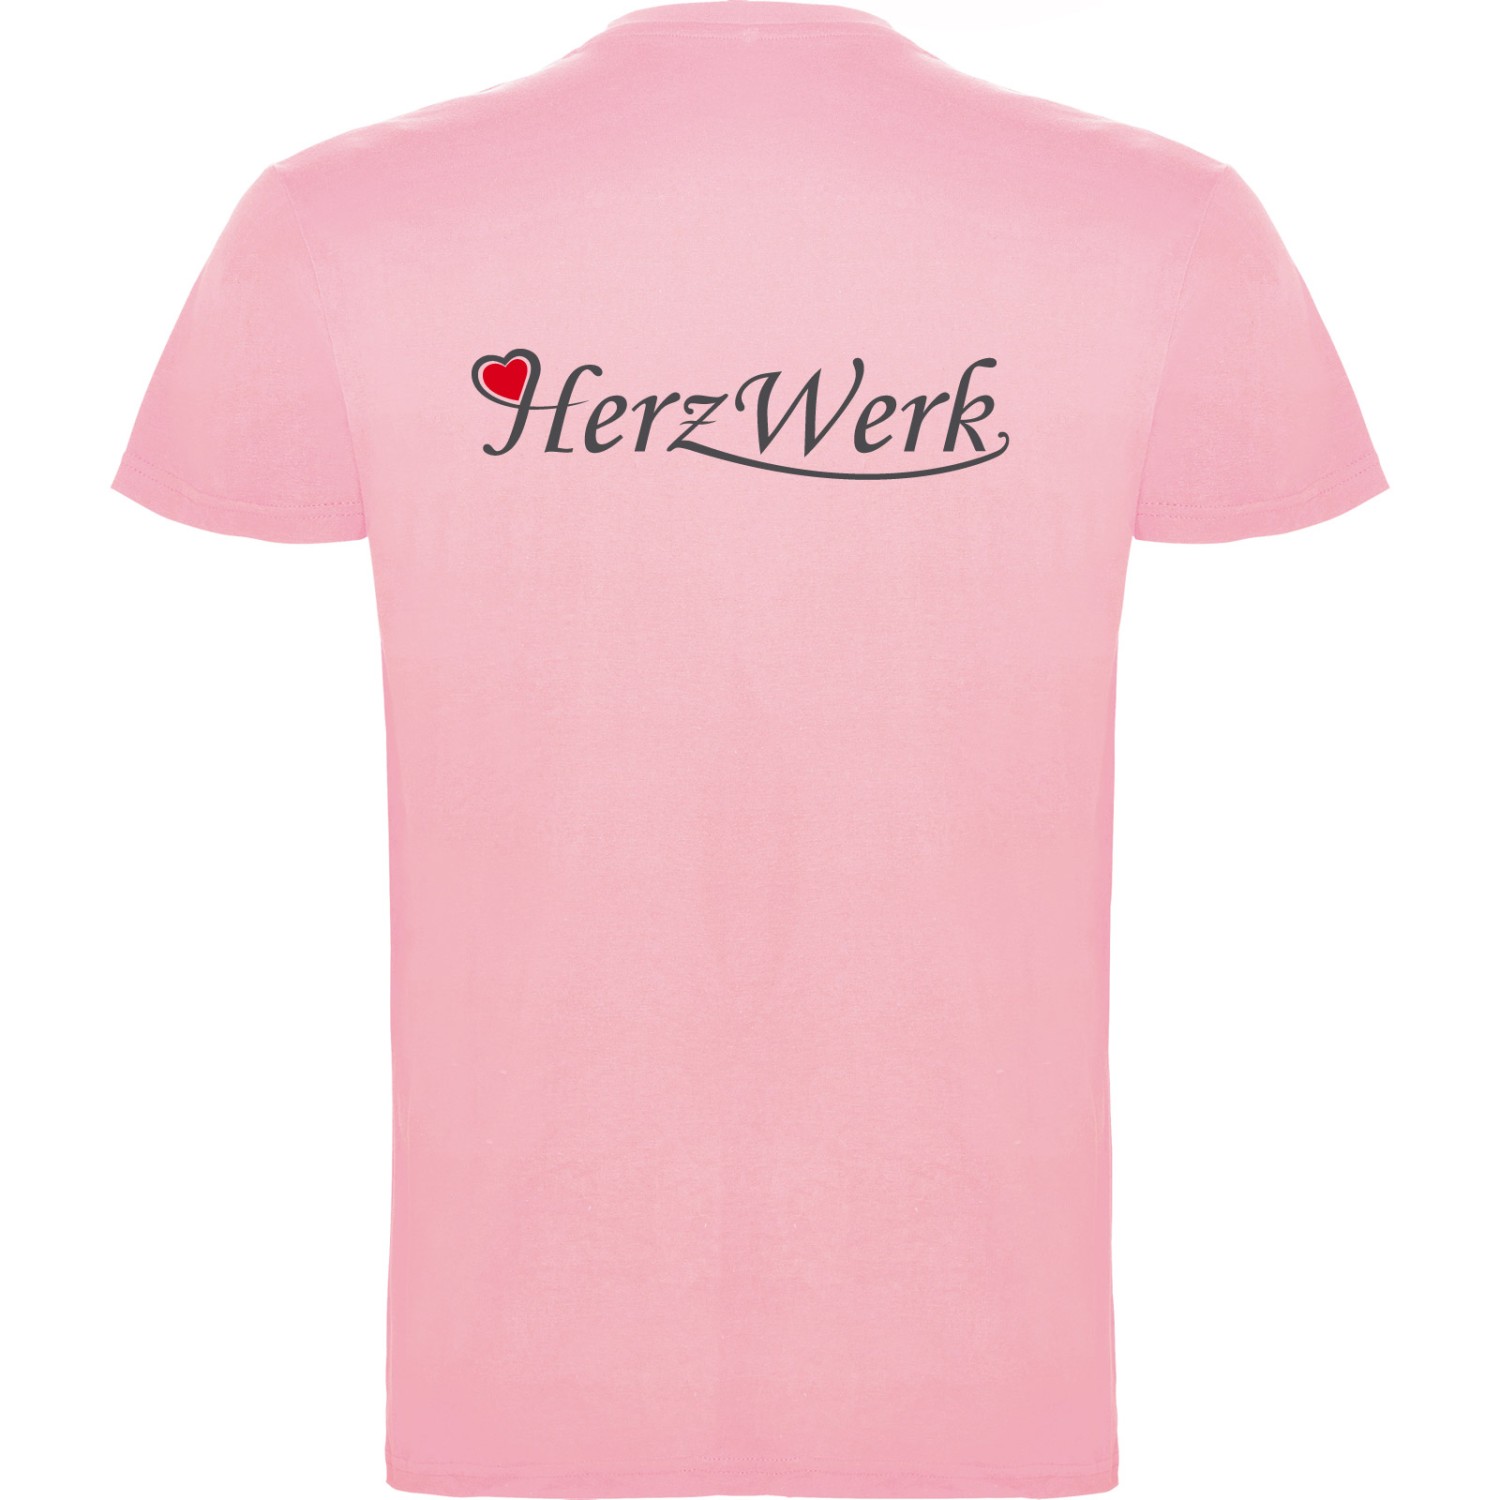 2. Foto T-Shirt BEAGLE Kurzarm Rundhals mit Druck (Farbe: light pink Größe: XL)